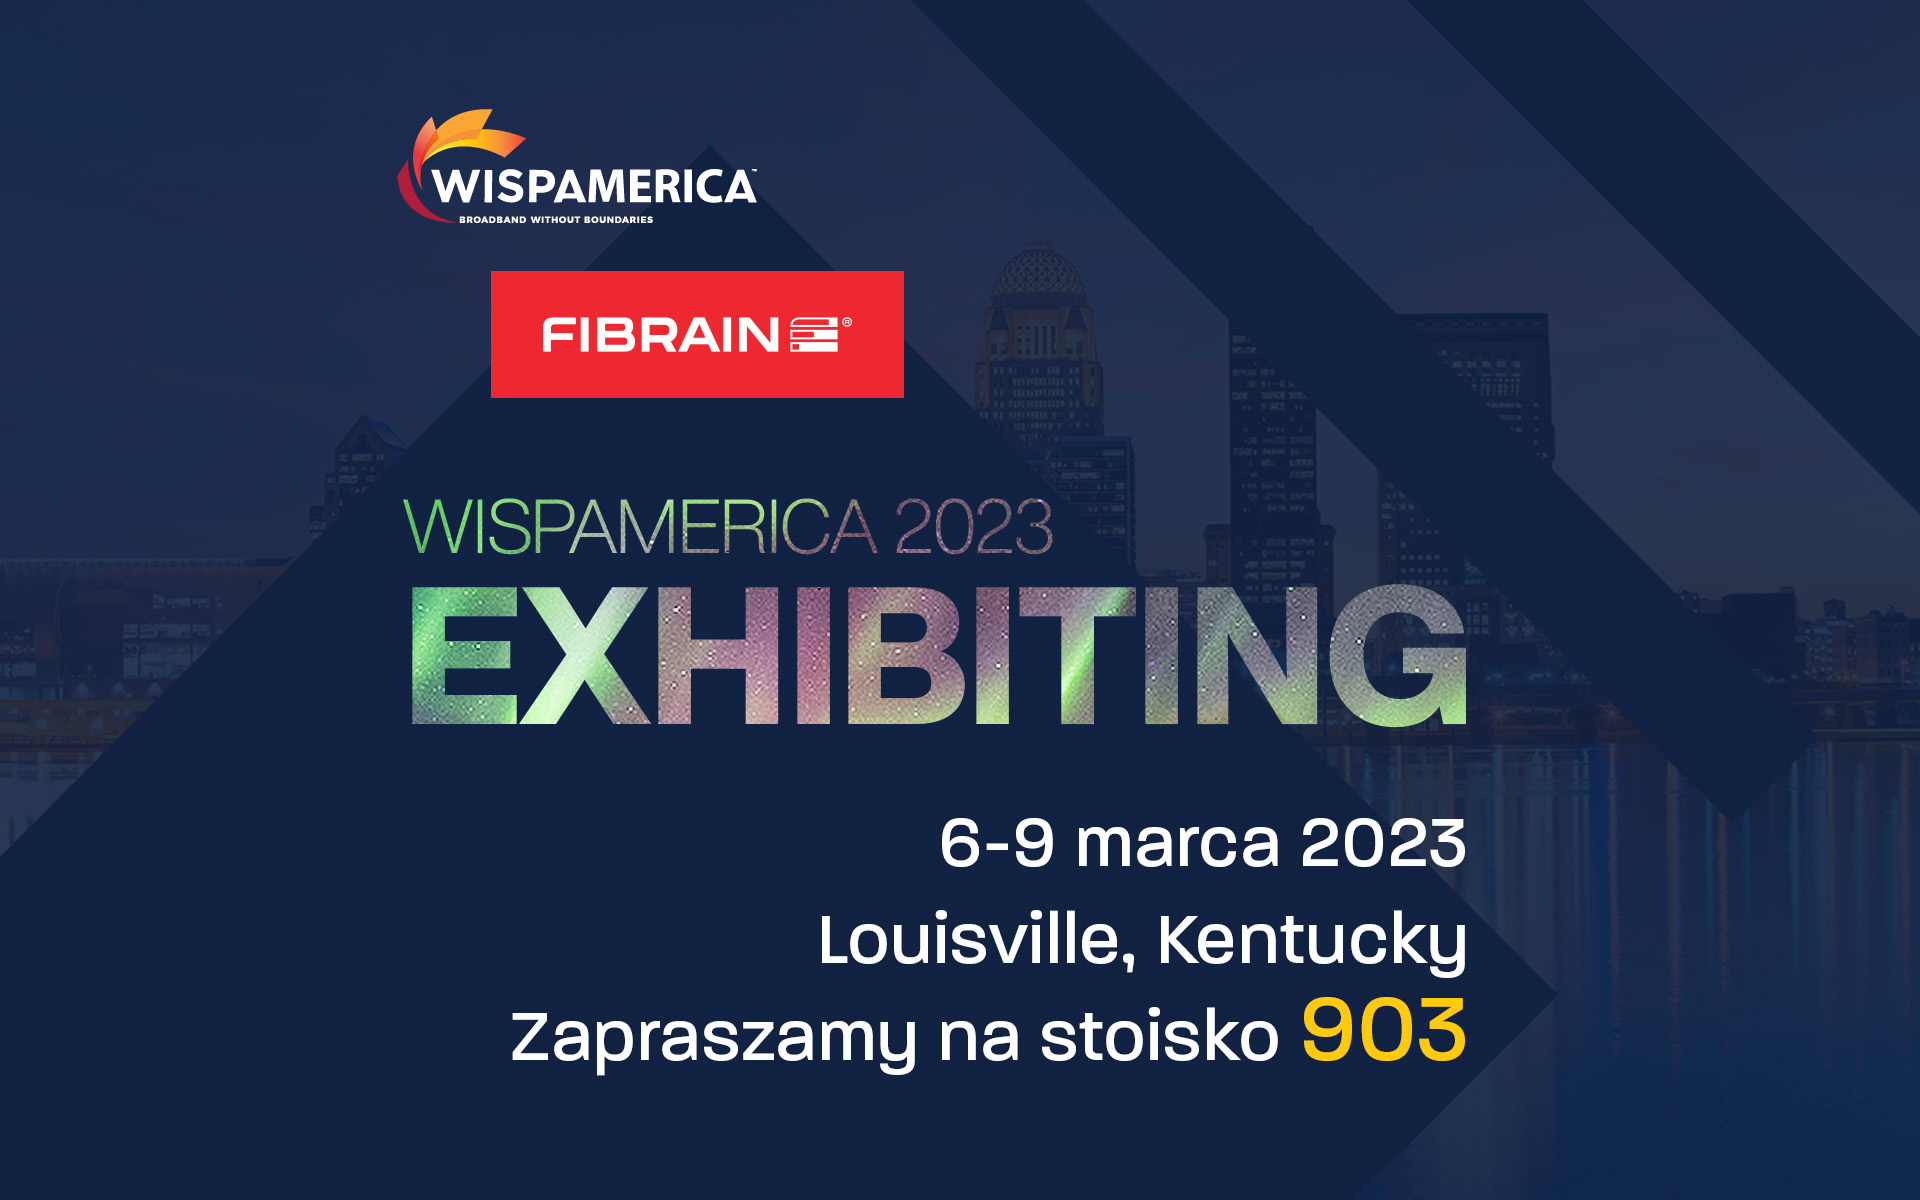 Bierzemy udział w kolejnej edycji targów WISPAMERICA 2023 w USA!